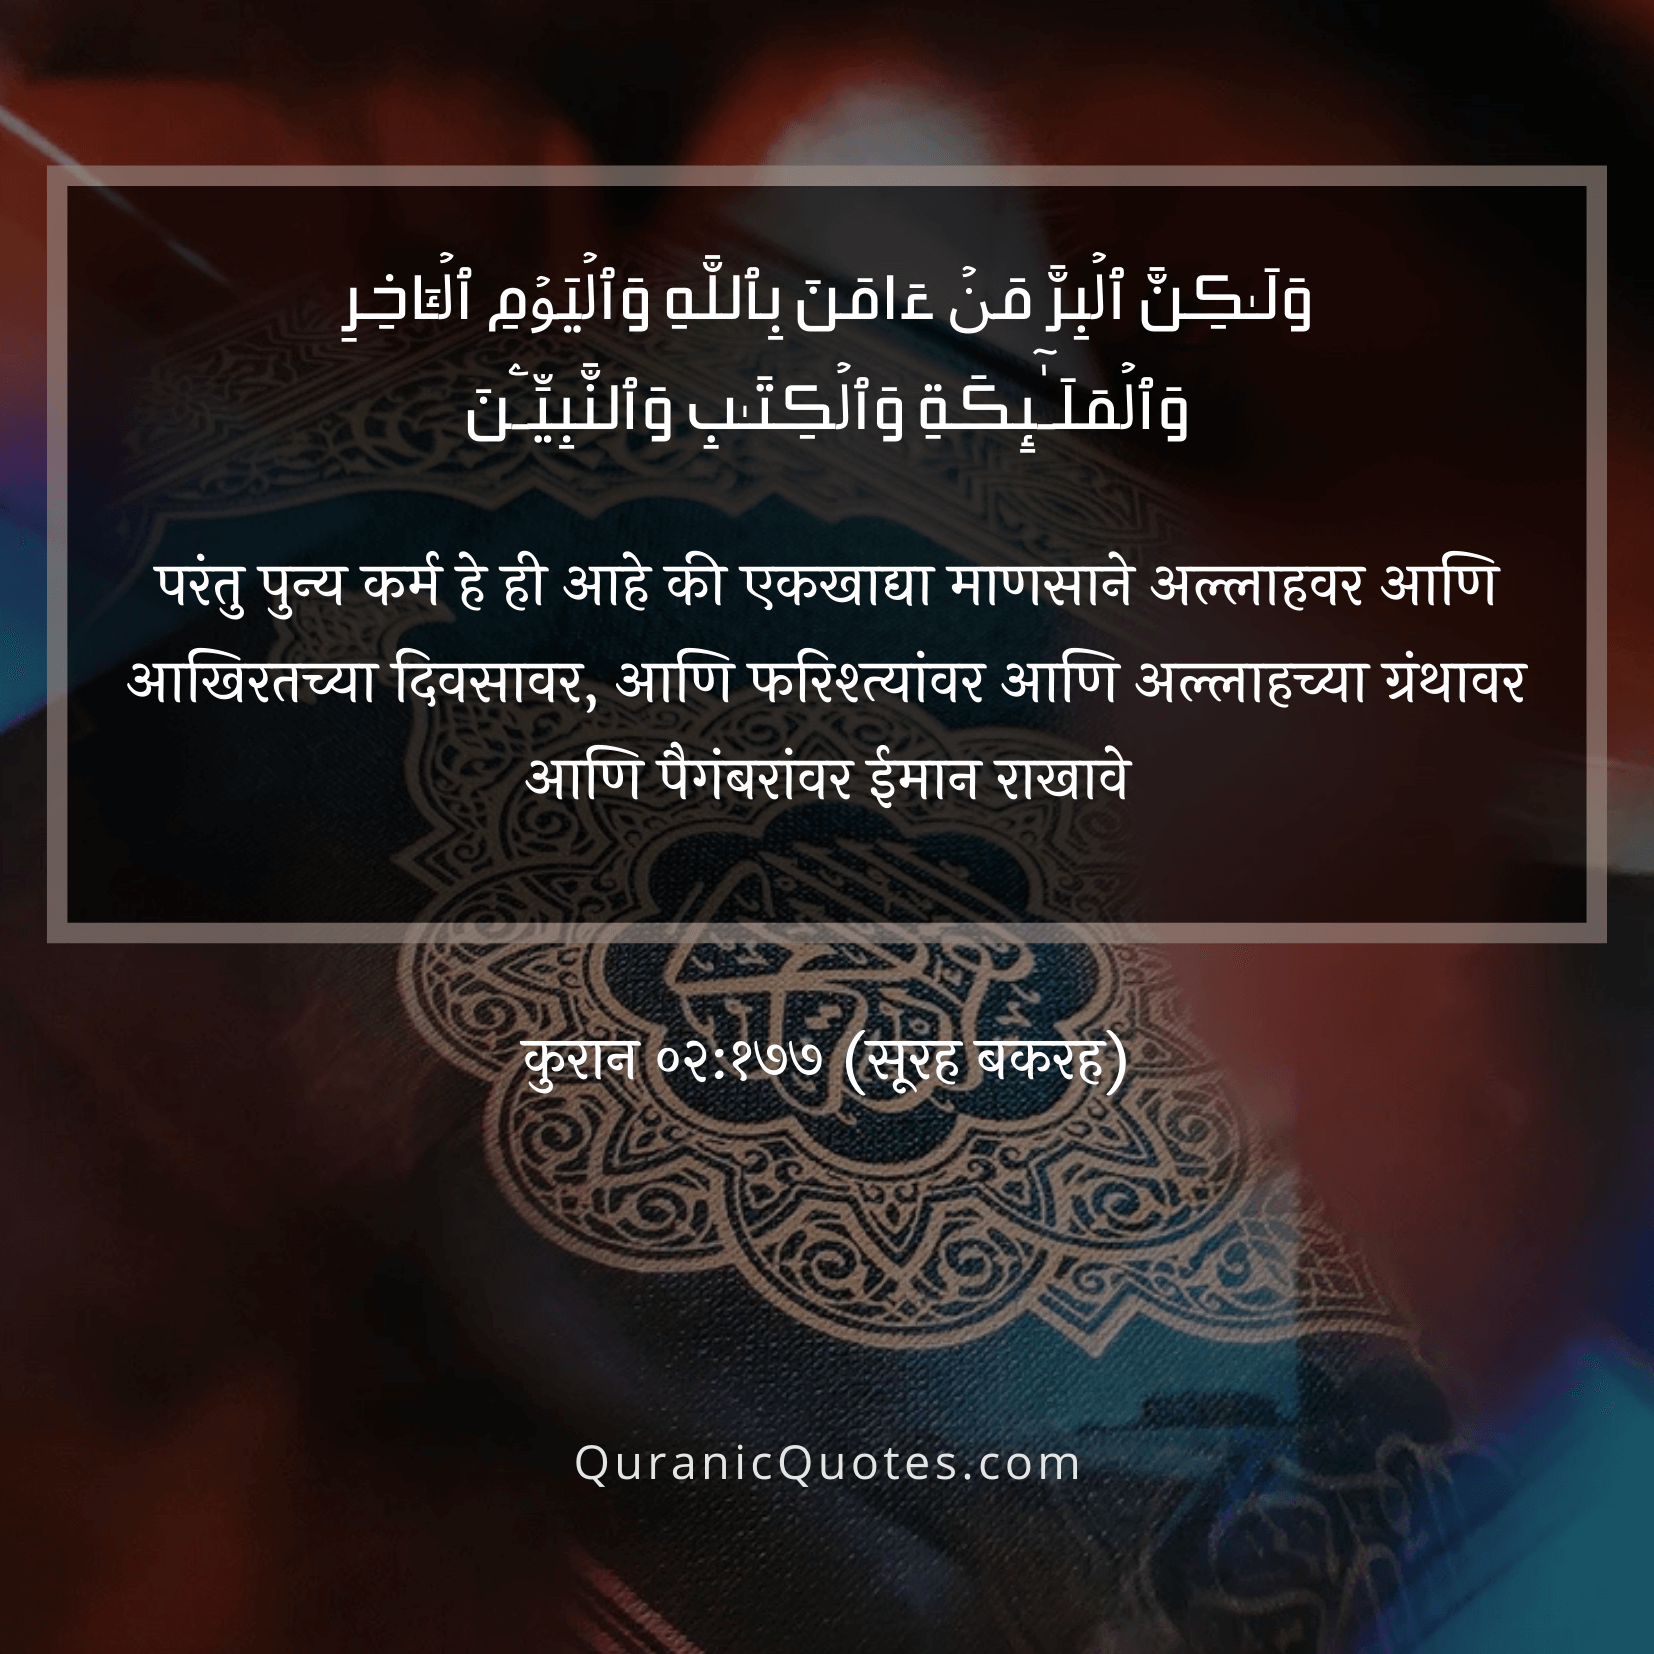 Quranic Quotes Marathi #13